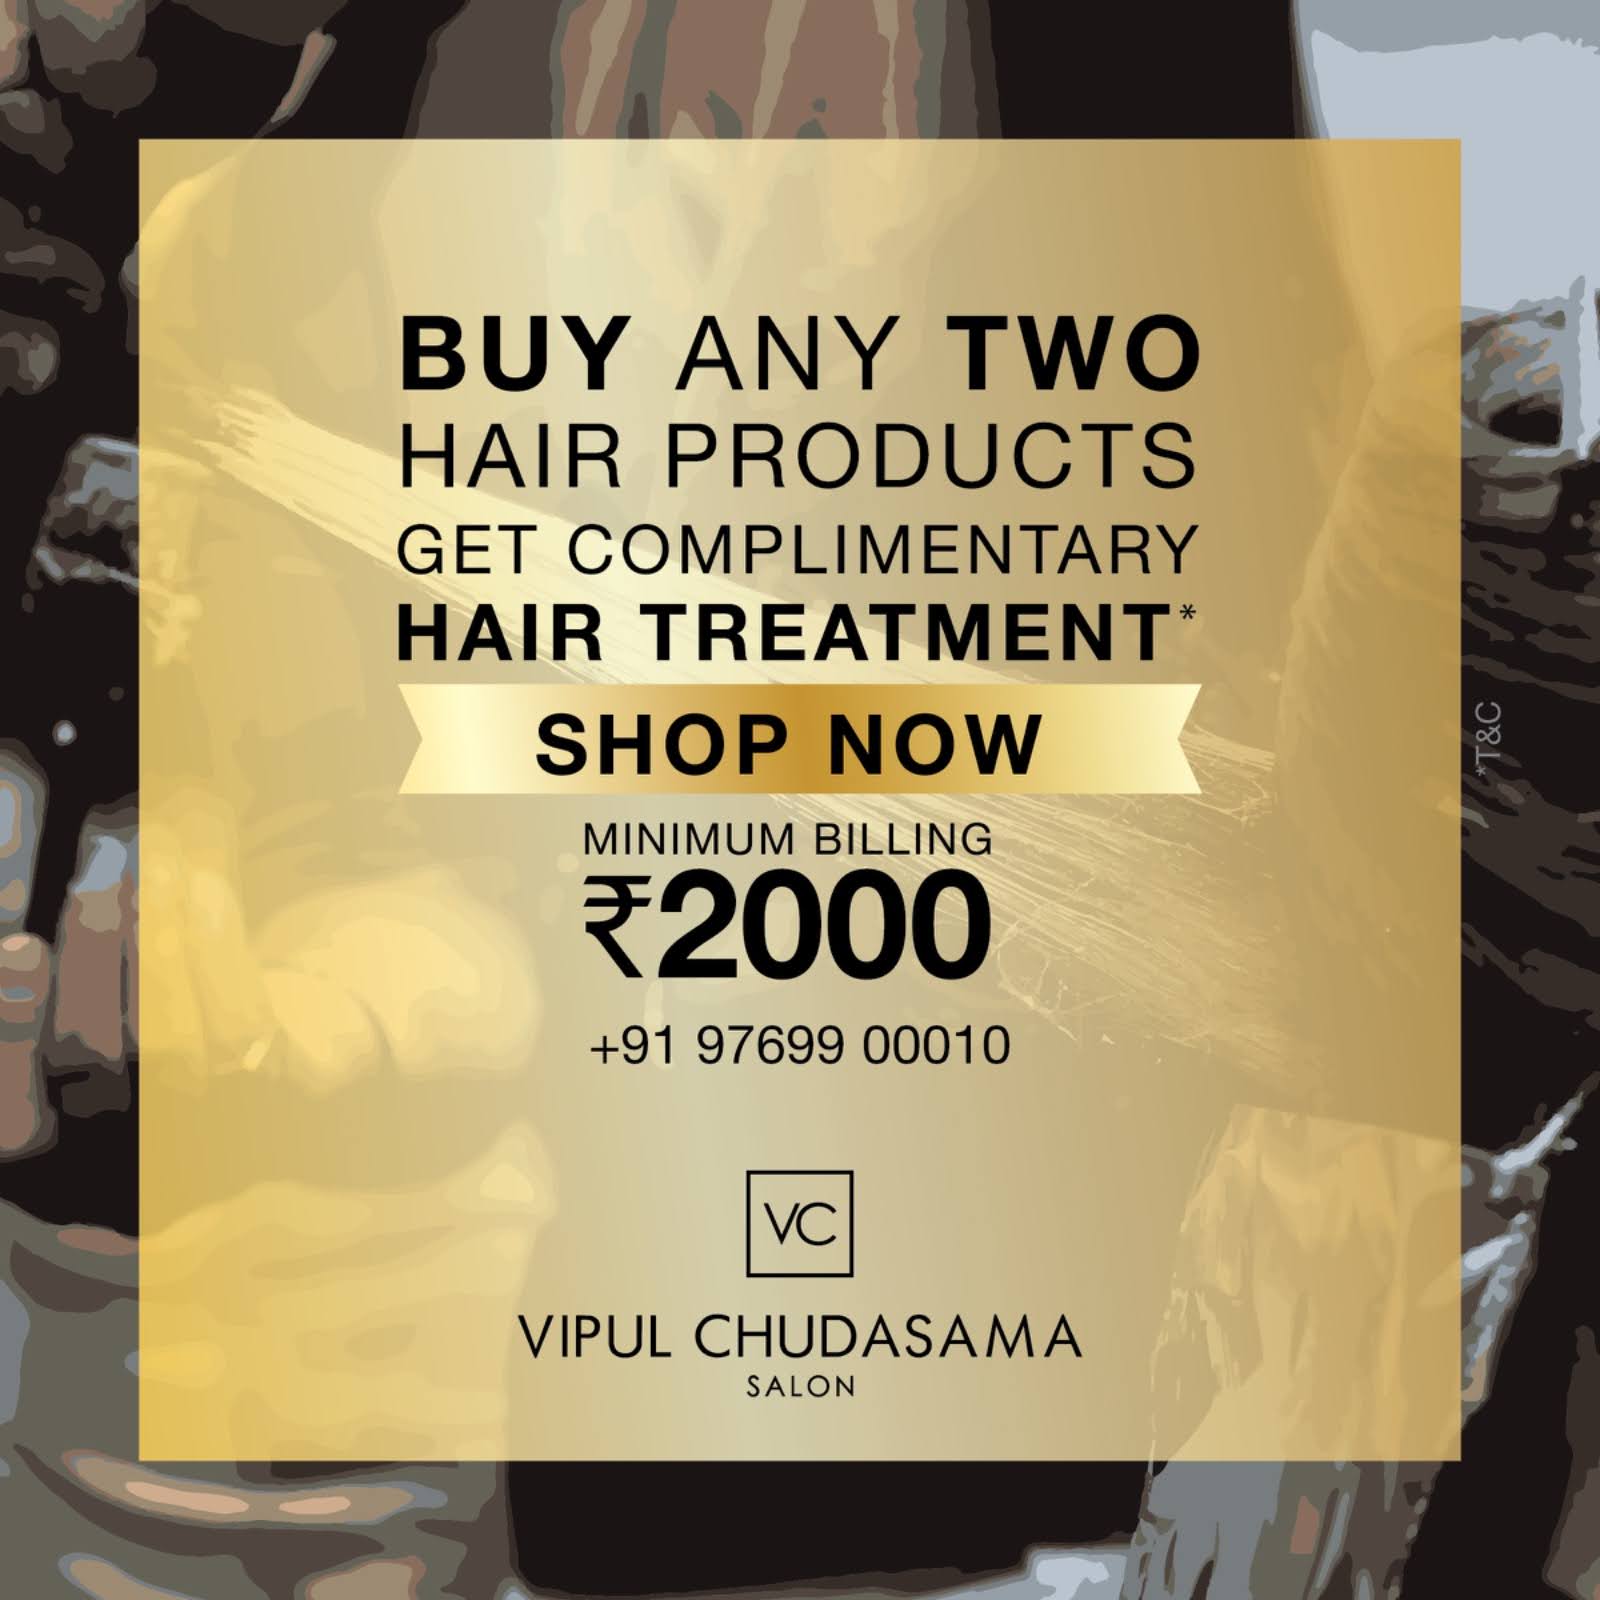 Hair Product Offers at Vipul Chudasama Salon